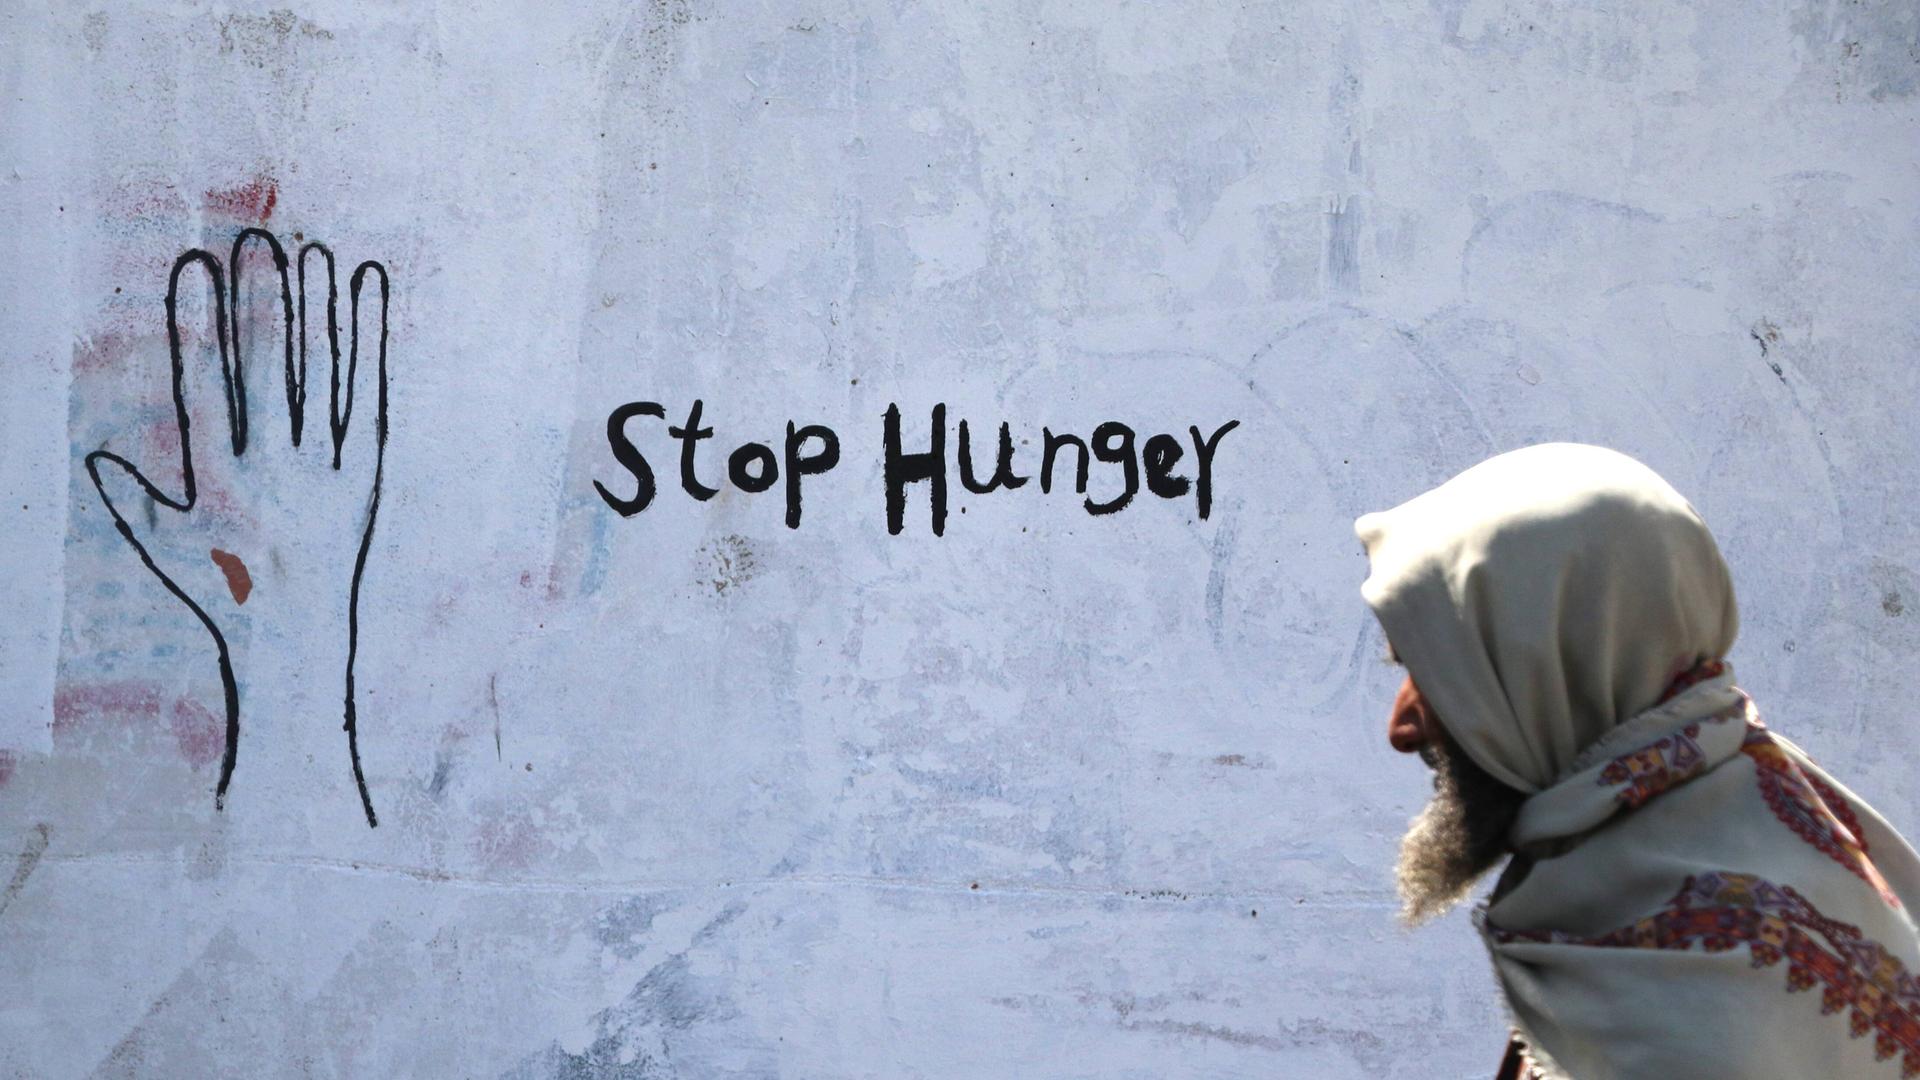 Ein älterer jemenitischer Mann geht an einer Hauswand vorbei, auf der "Stop Hunger" gesprüht ist.